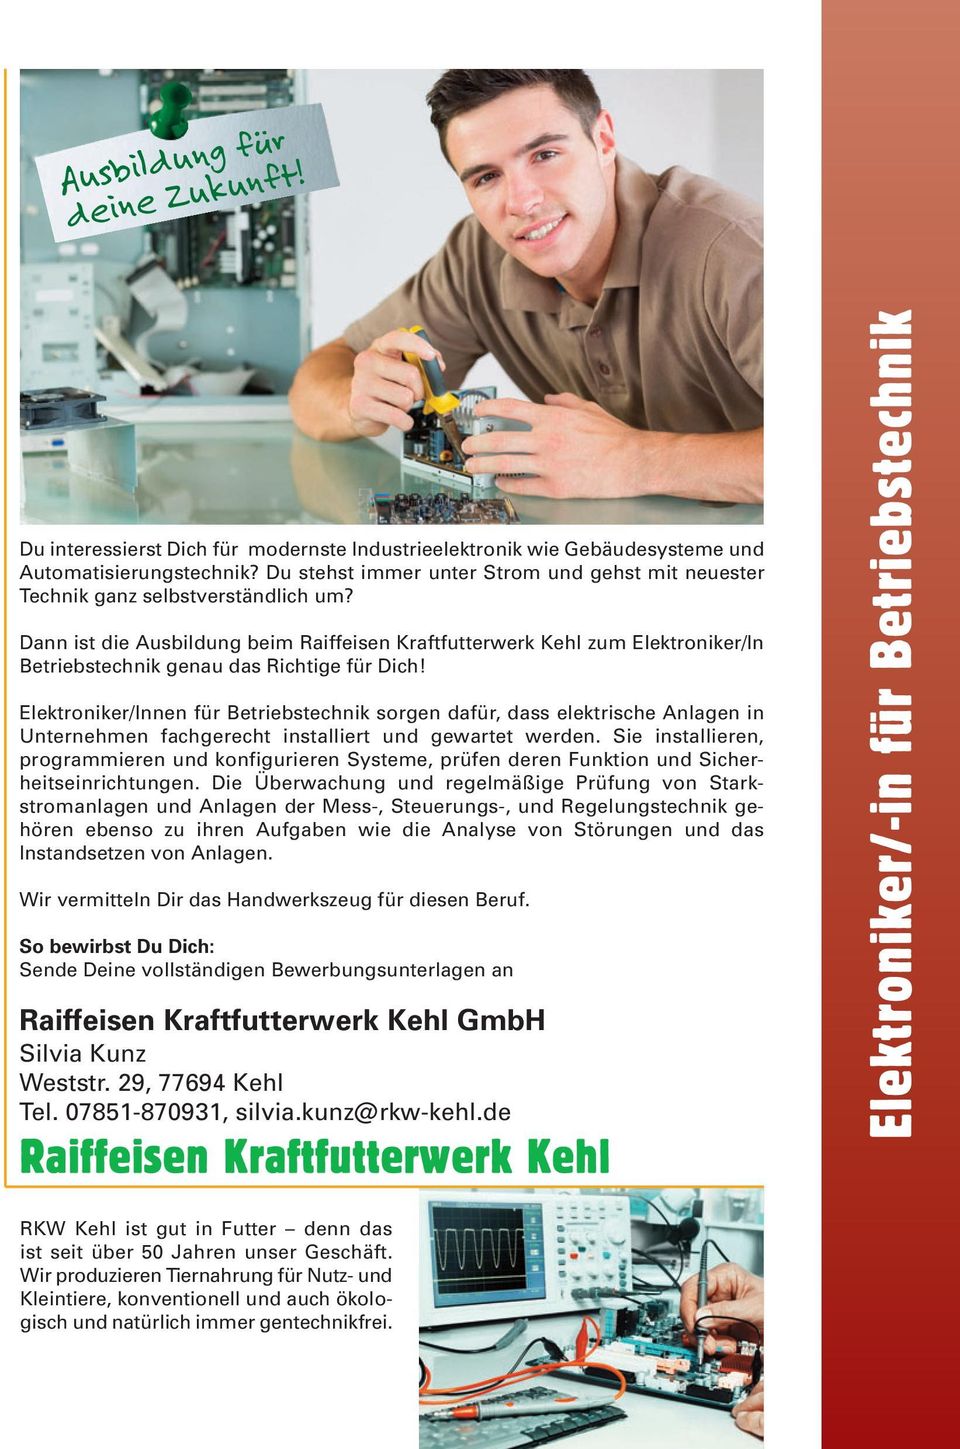 Dann ist die Ausbildung beim Raiffeisen Kraftfutterwerk Kehl zum Elektroniker/In Betriebstechnik genau das Richtige für Dich!